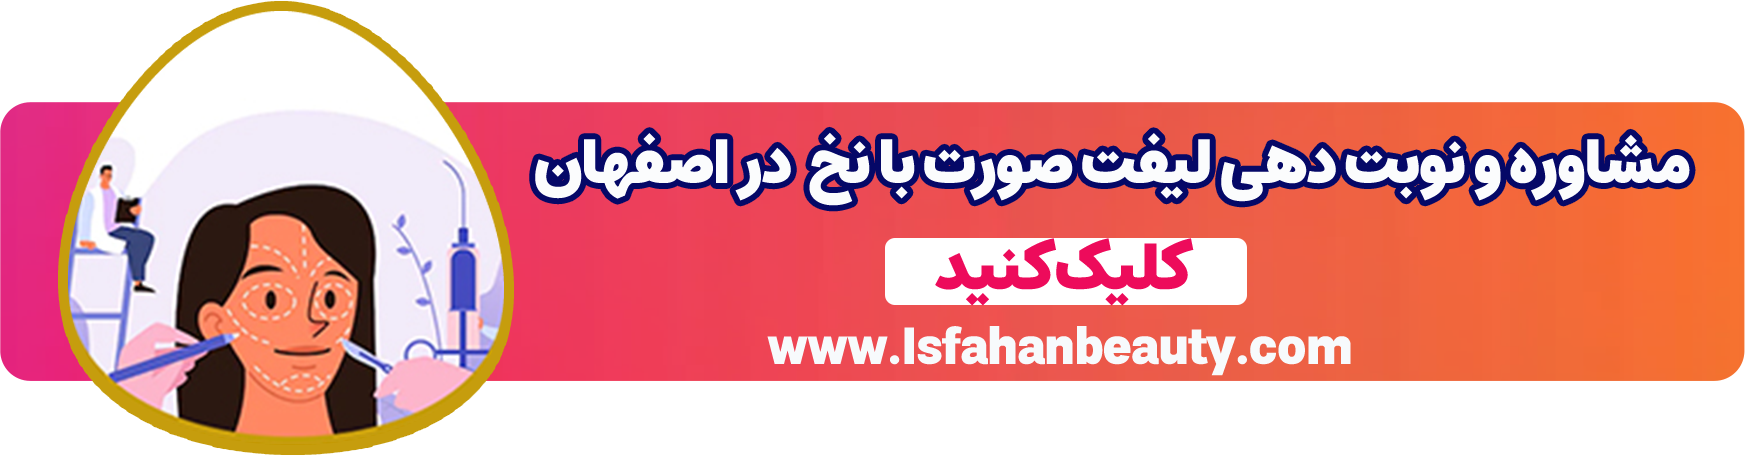 مشاوره و نوبت دهی لیفت با نخ | اصفهان بیوتی